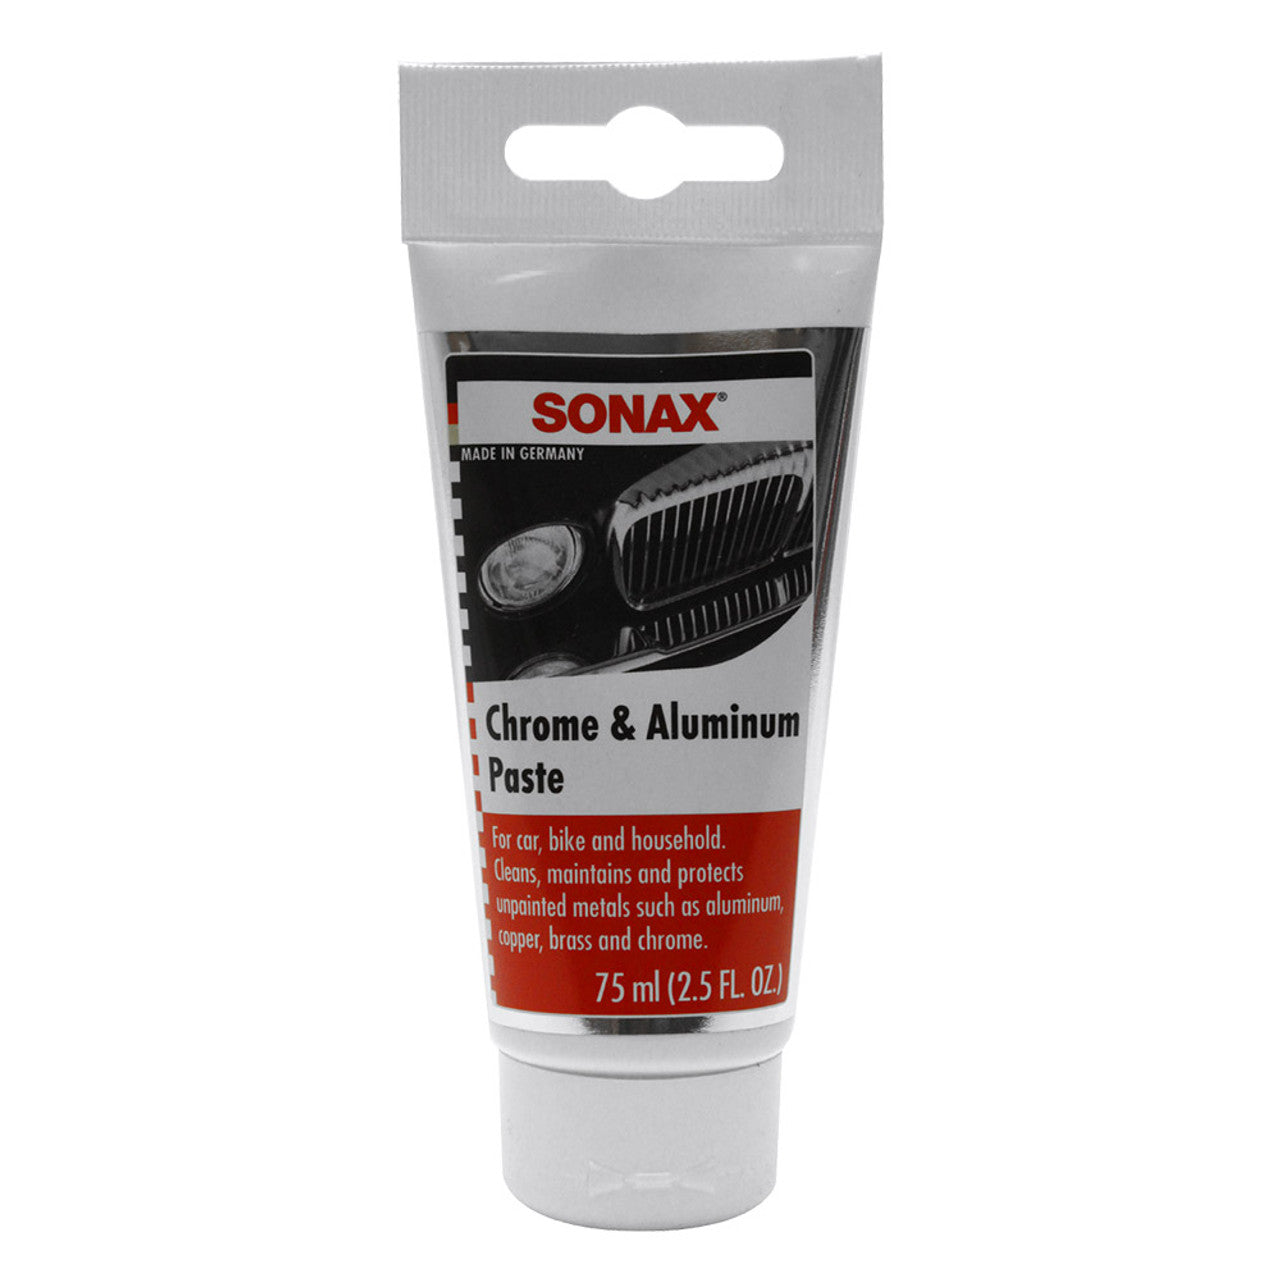 Sonax Chrome & Aluminum Paste